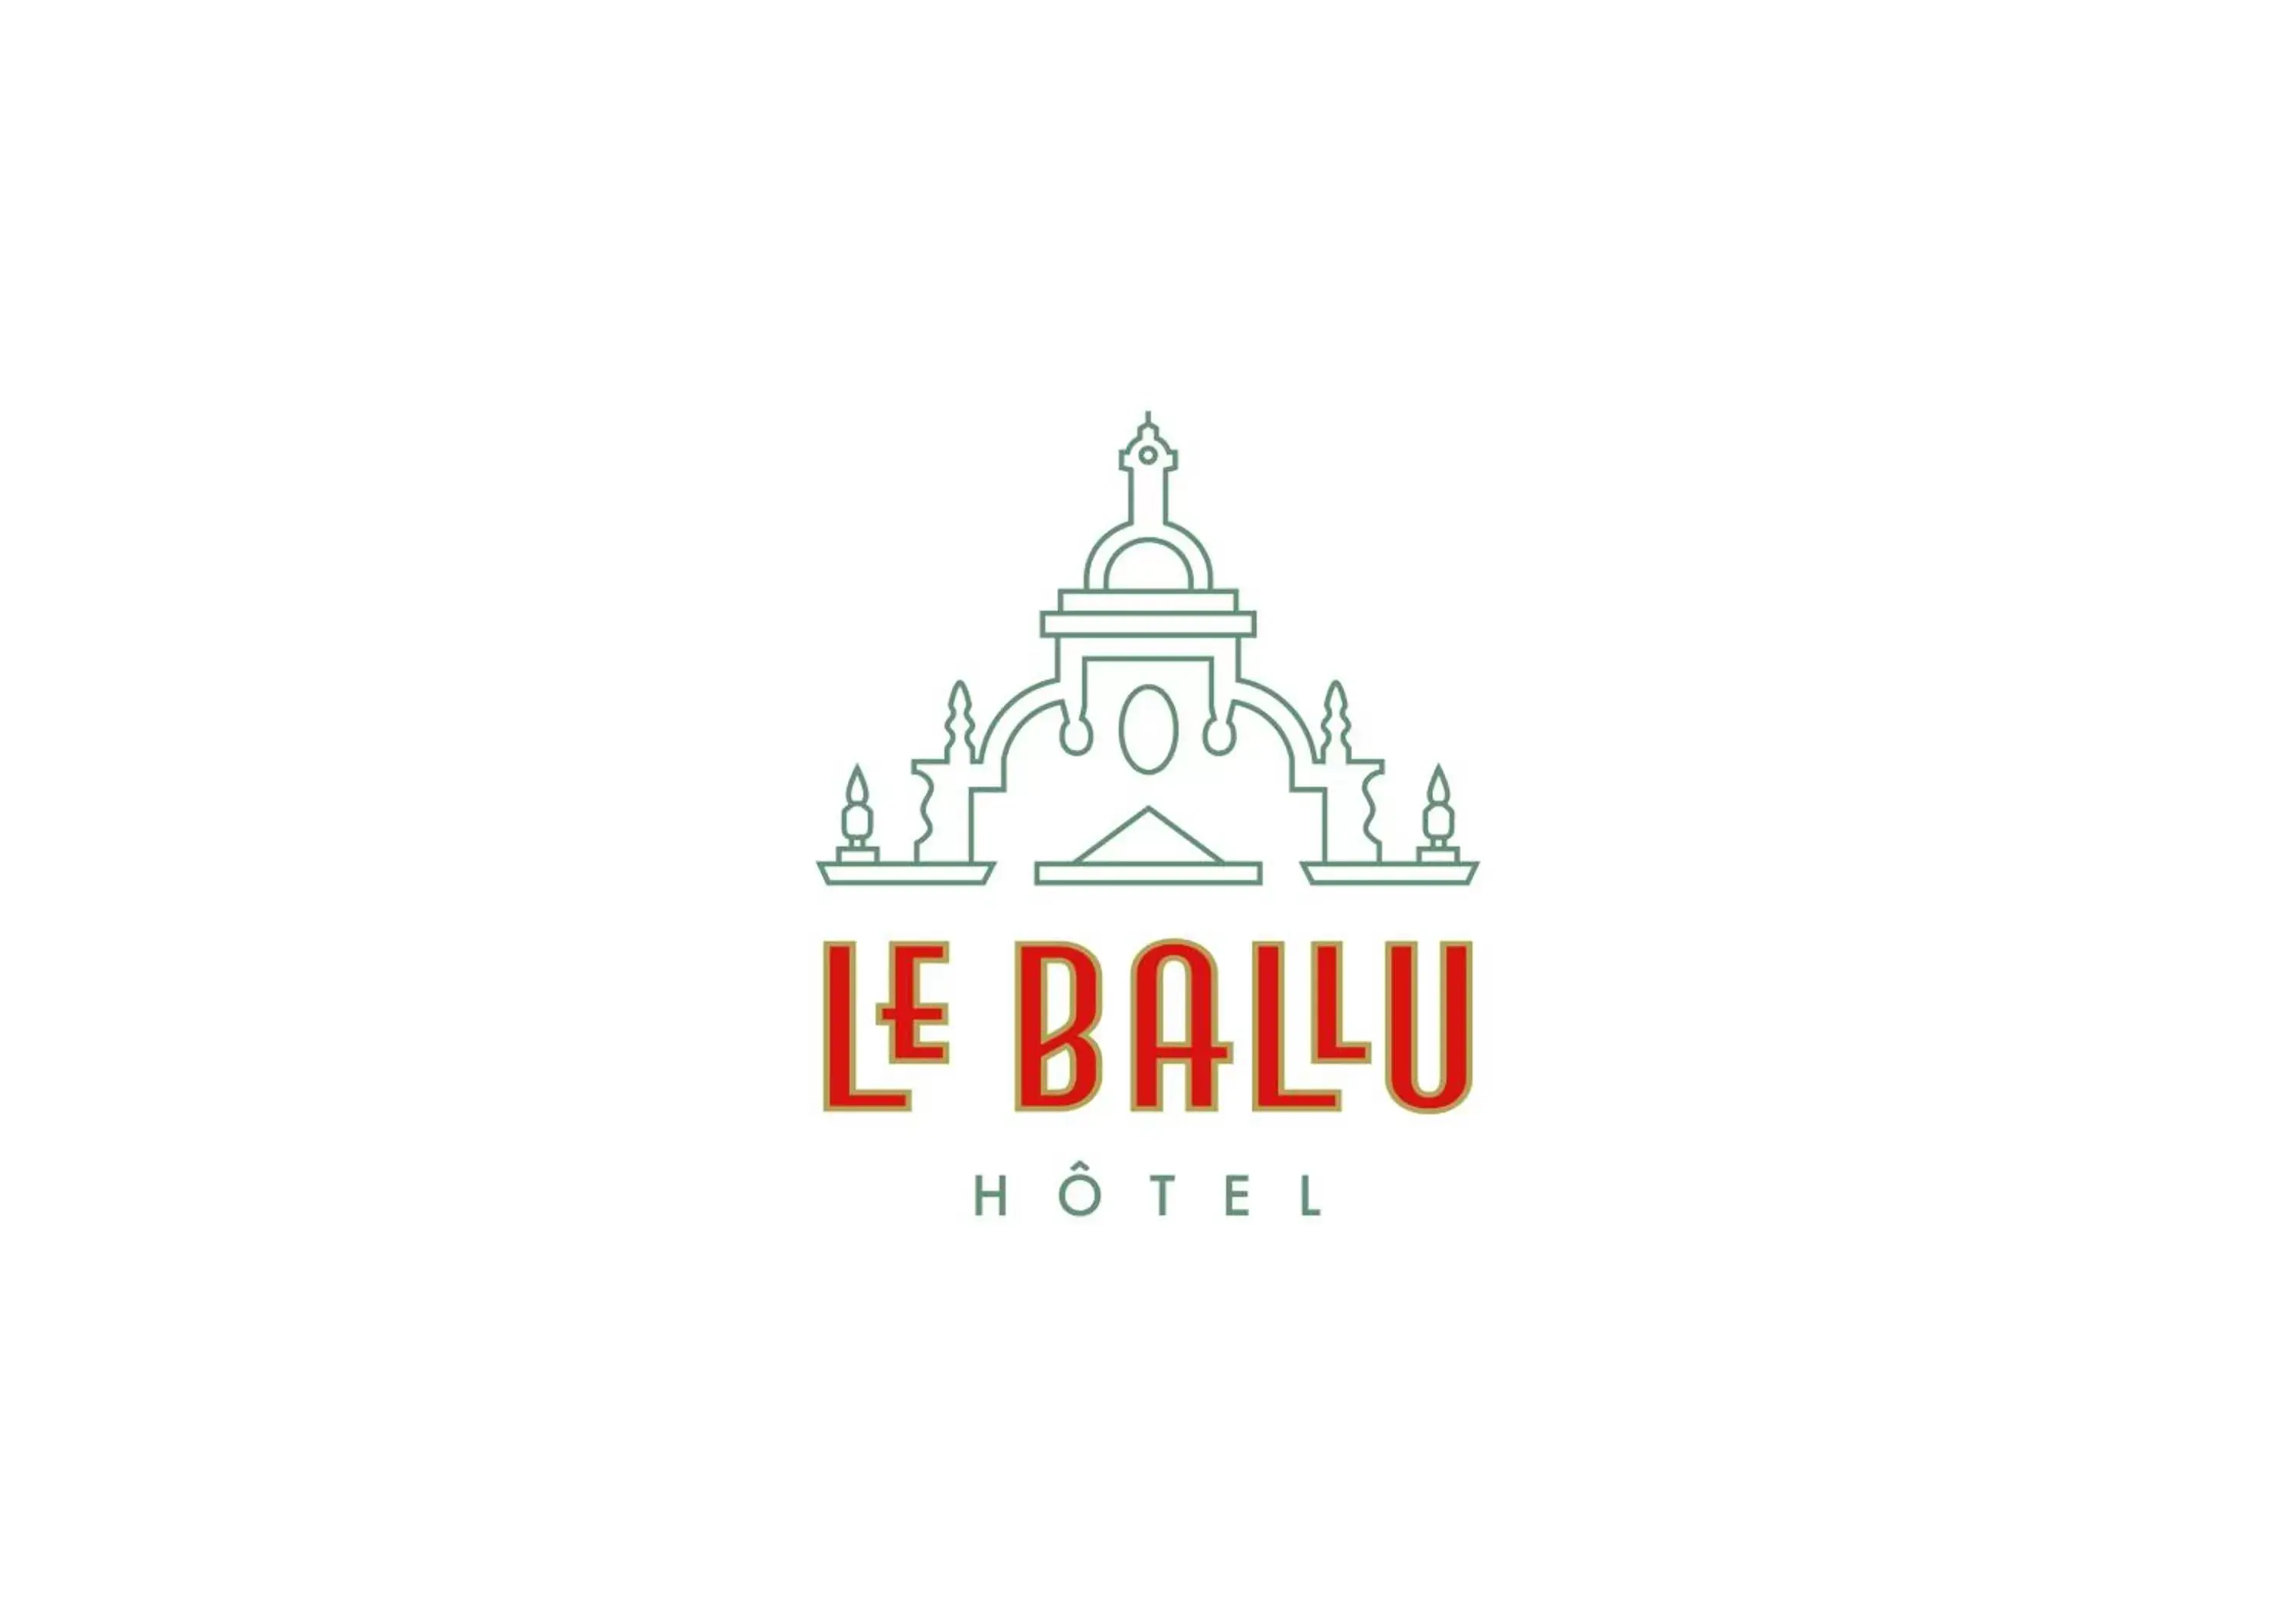 Property logo or sign, Property Logo/Sign in Hôtel Le Ballu